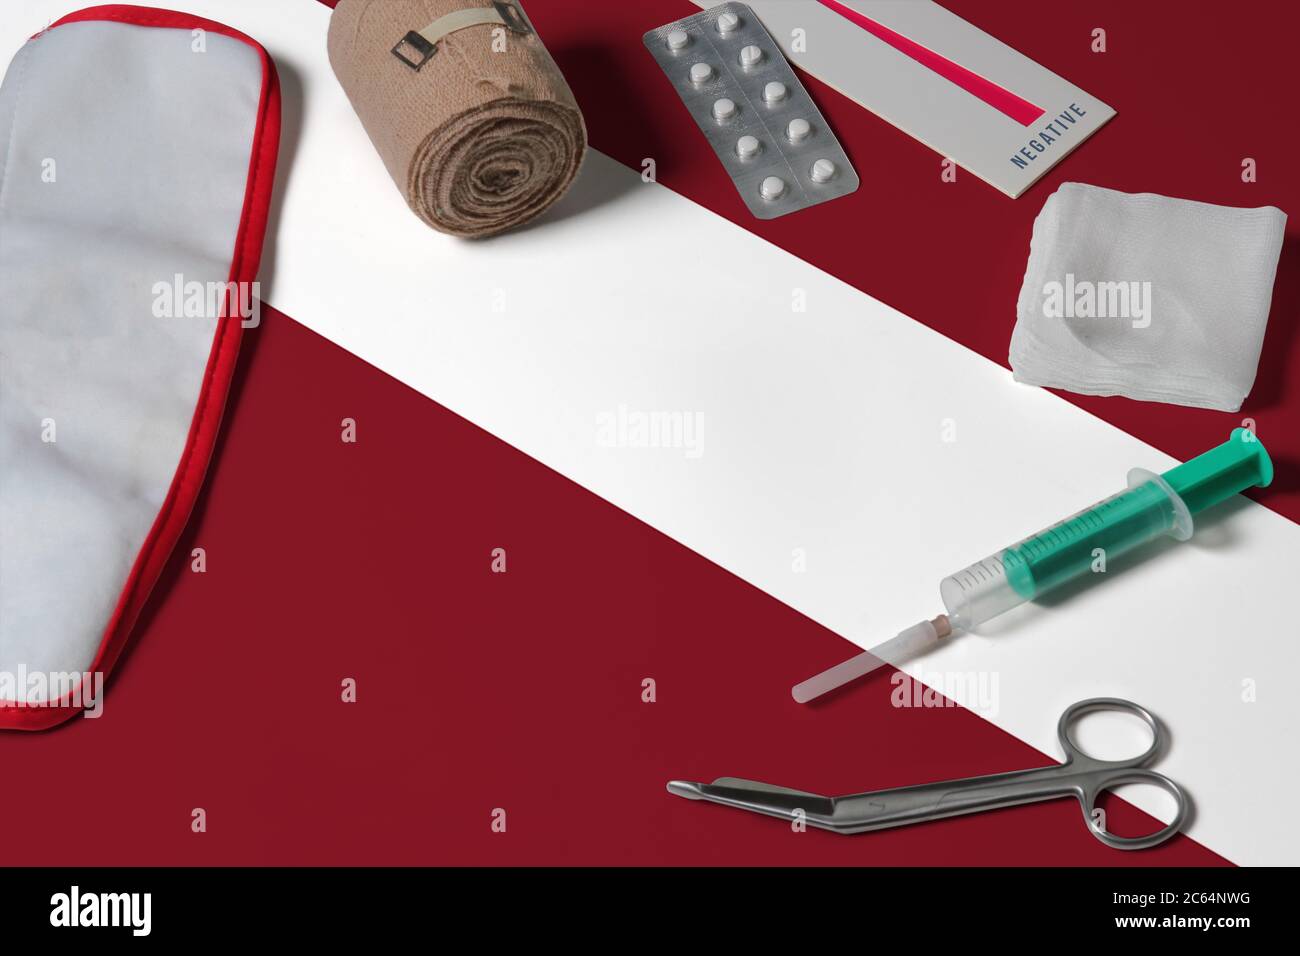 Lettland Flagge mit erste-Hilfe-medizinische Ausrüstung auf Holztisch Hintergrund. Nationales Gesundheitssystem Konzept, medizinisches Thema. Stockfoto